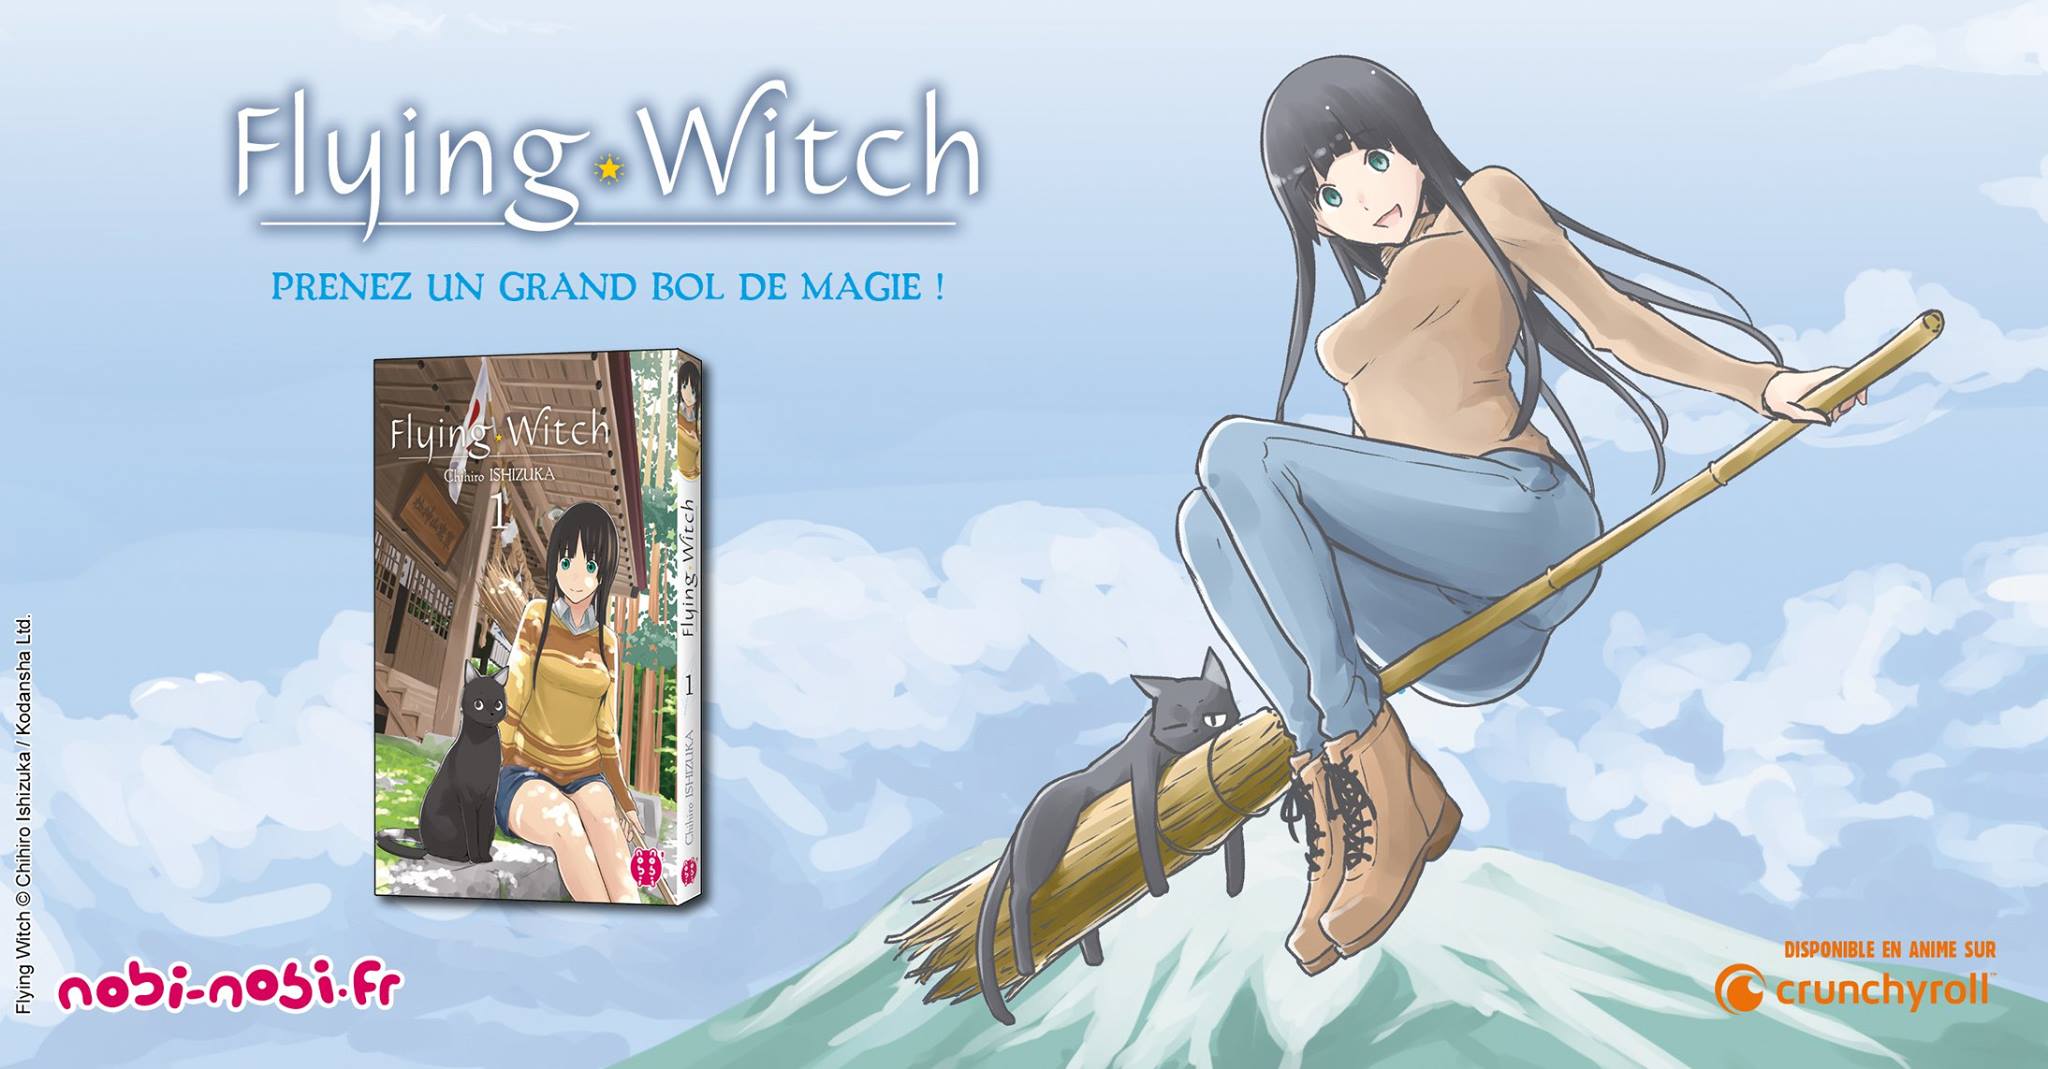 flying witch Le manga「 Flying Witch 」rejoindra le catalogue de Nobi-Nobi !